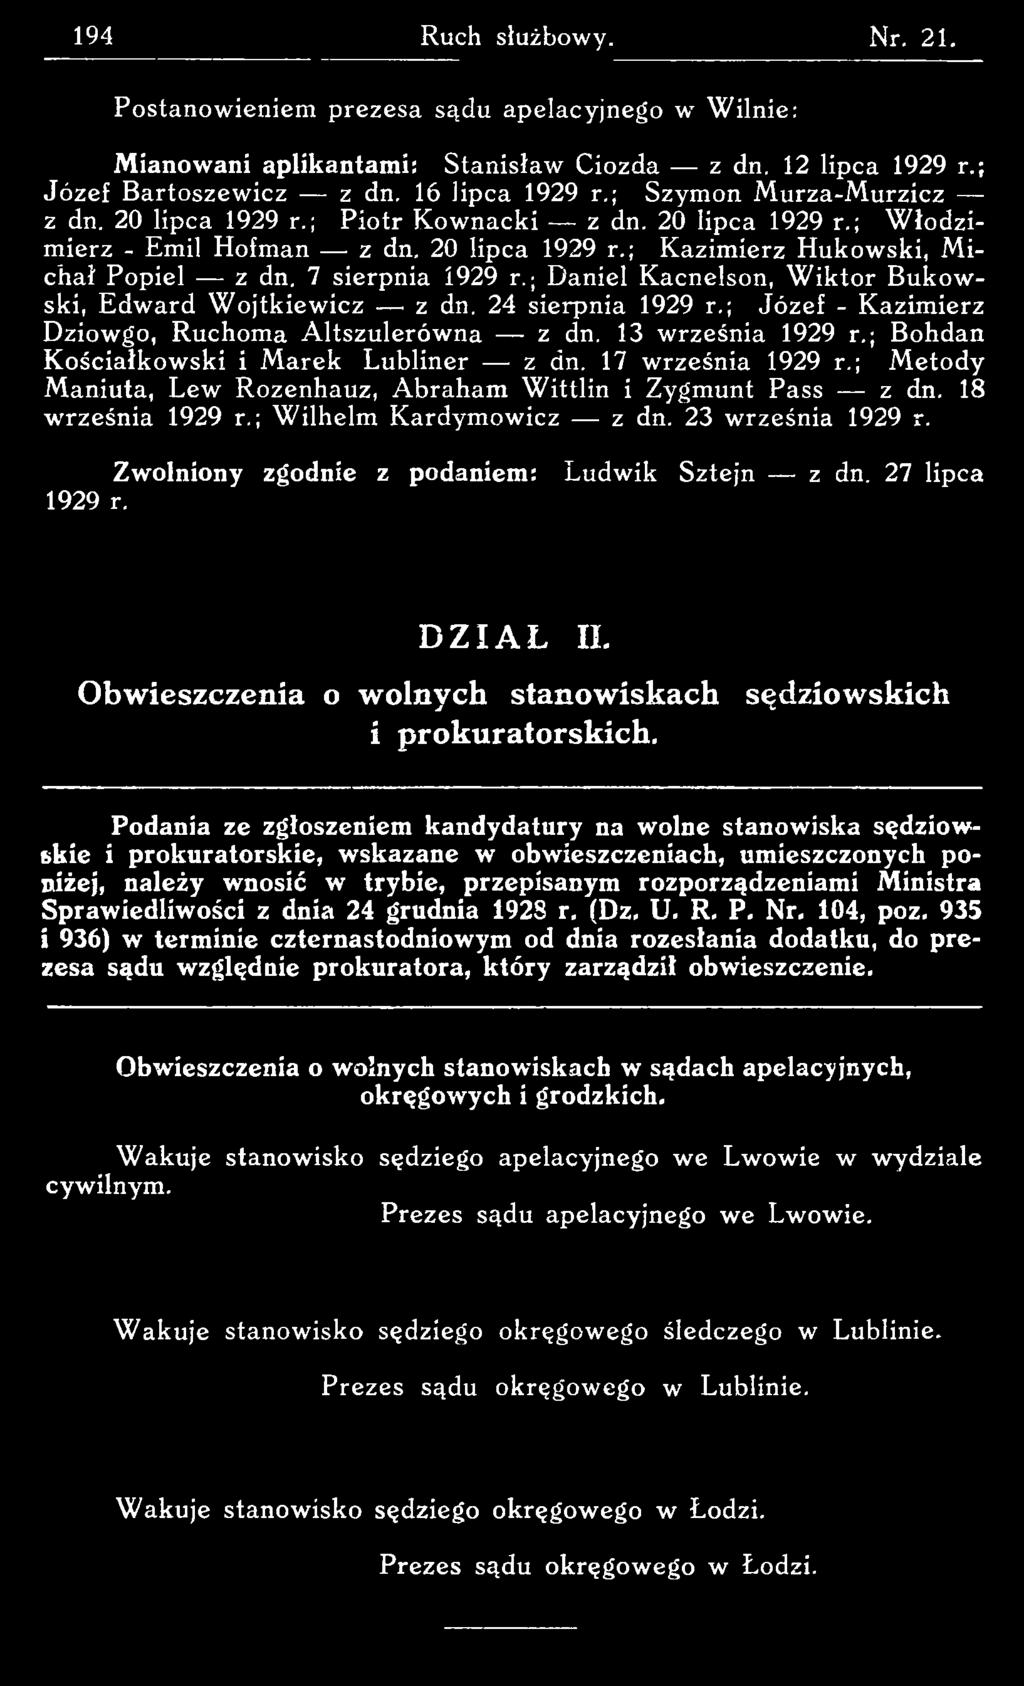 23 września 1929 r. Zwolniony zgodnie z podaniem: 1929 r. Ludwik Sztejn z dn. 27 lipca DZIAŁ n. Obwieszczenia o wolnych stanowiskach sędziowskich i prokuratorskich.